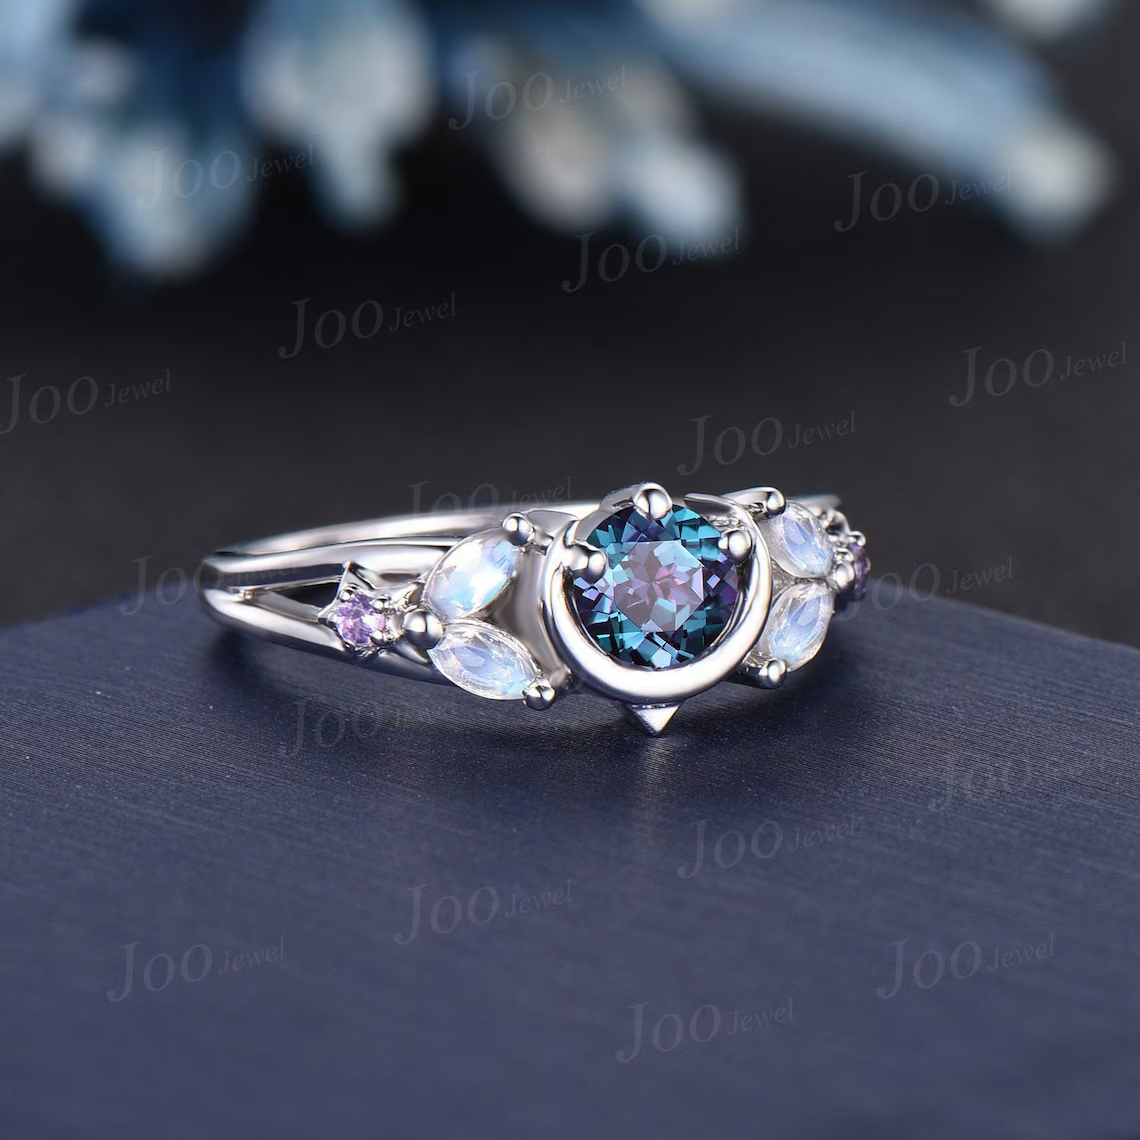 5mm Color-Change Alexandrite Engagement Ring Moon Star Ring White Gold Split Shank Design Moonstone Amethyst Celestial Wedding Ring Platinum